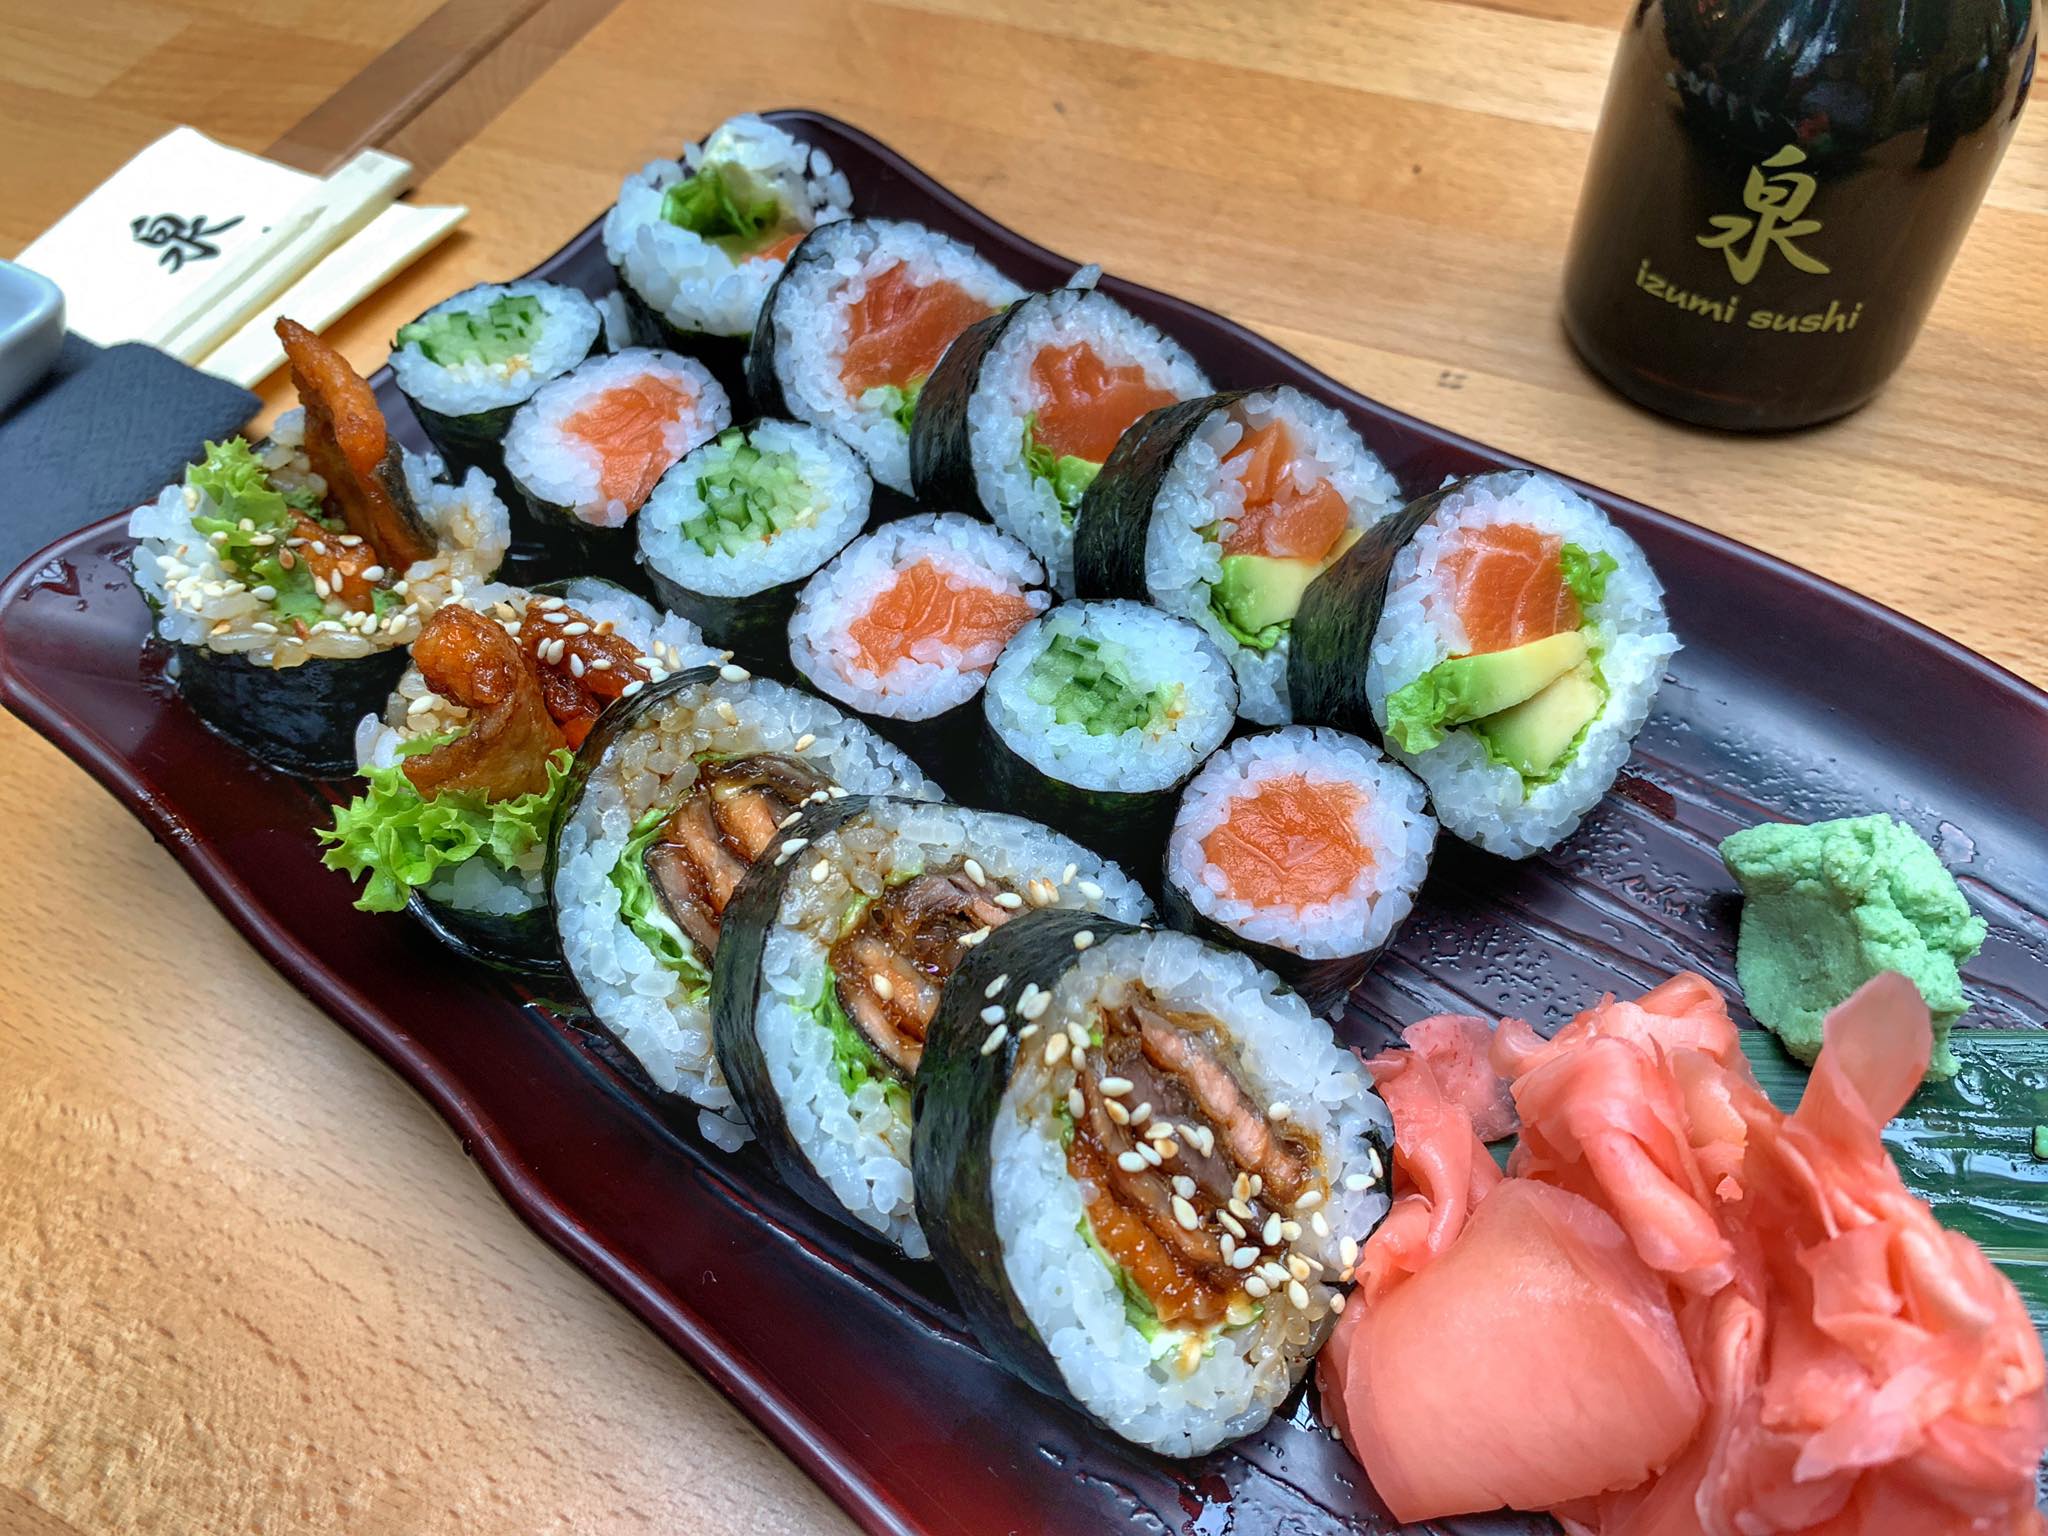 Pomysł na sushi